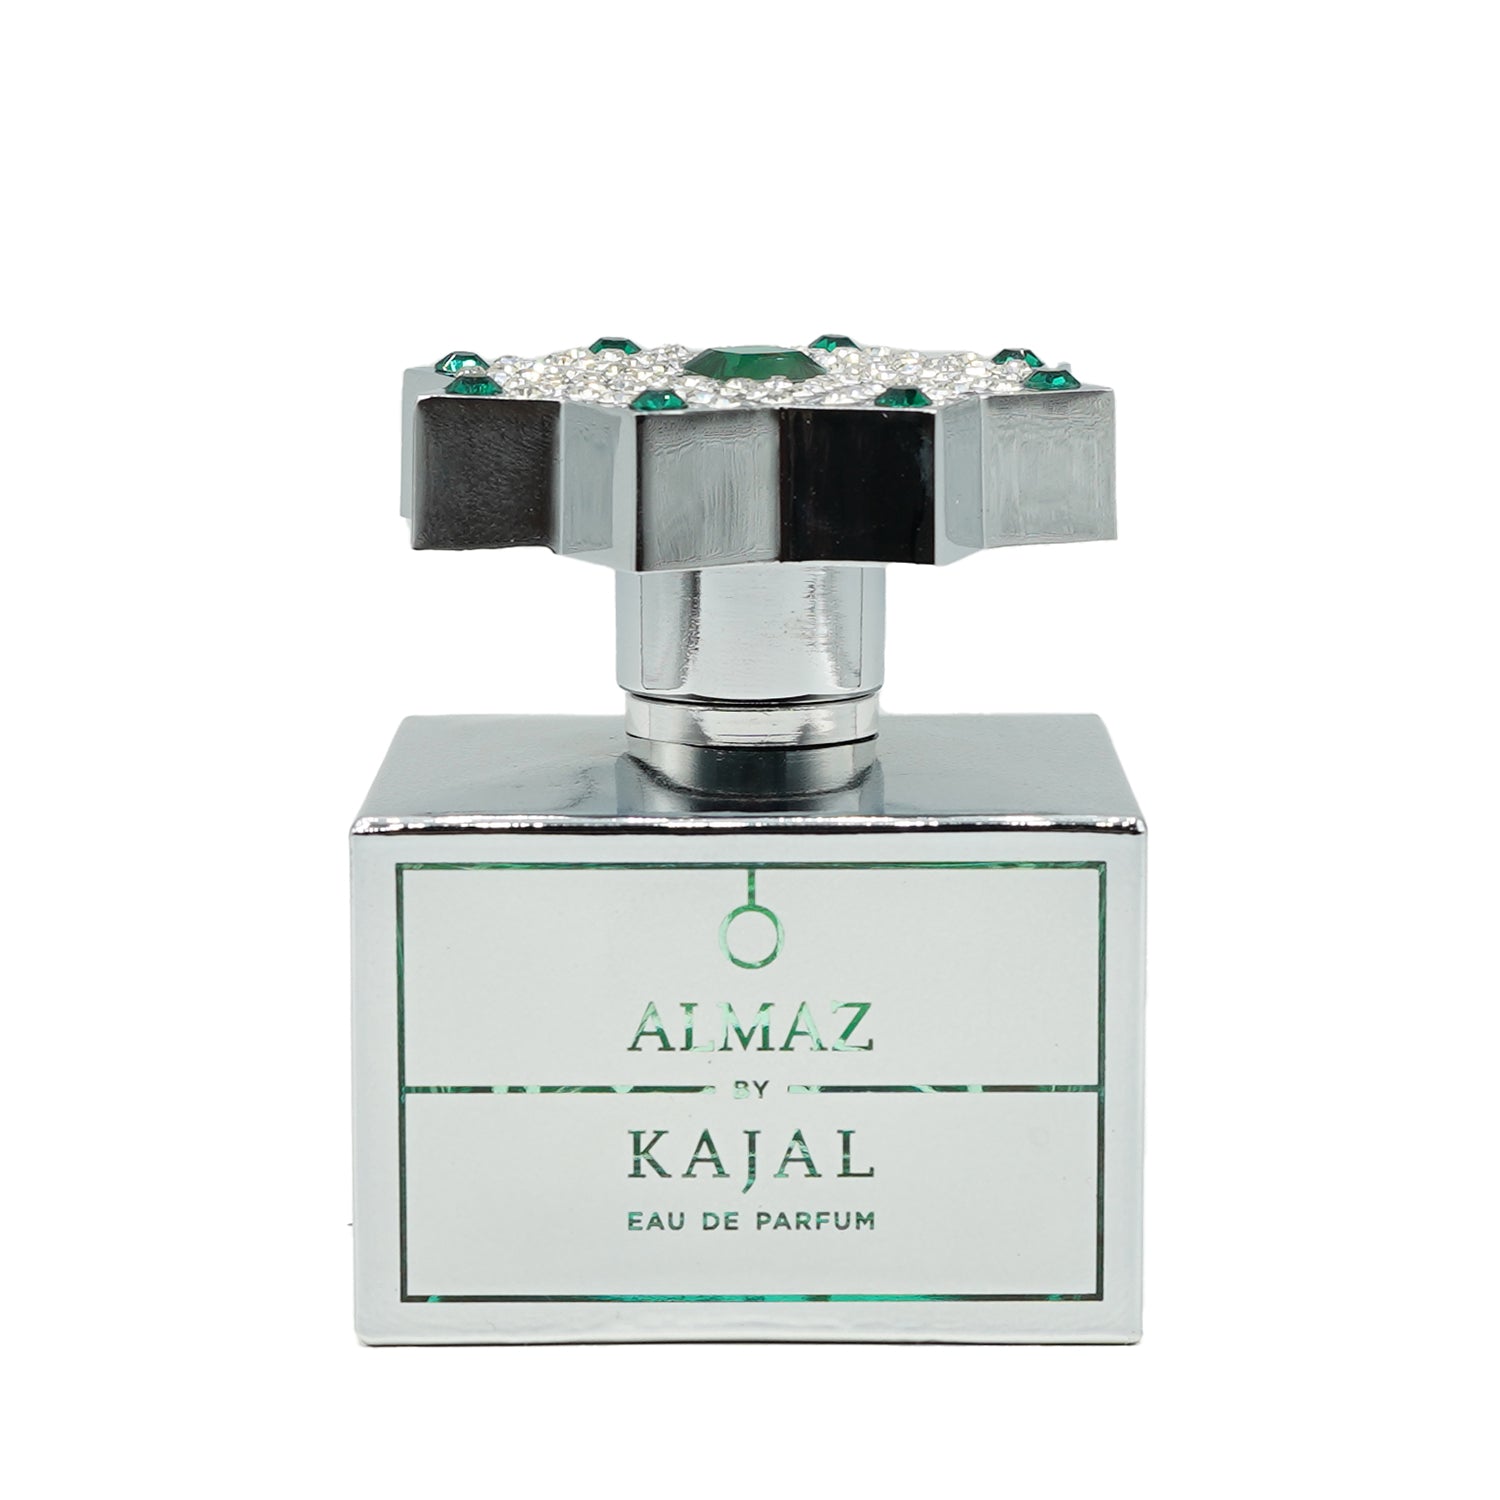 kajal | Almaz bottling